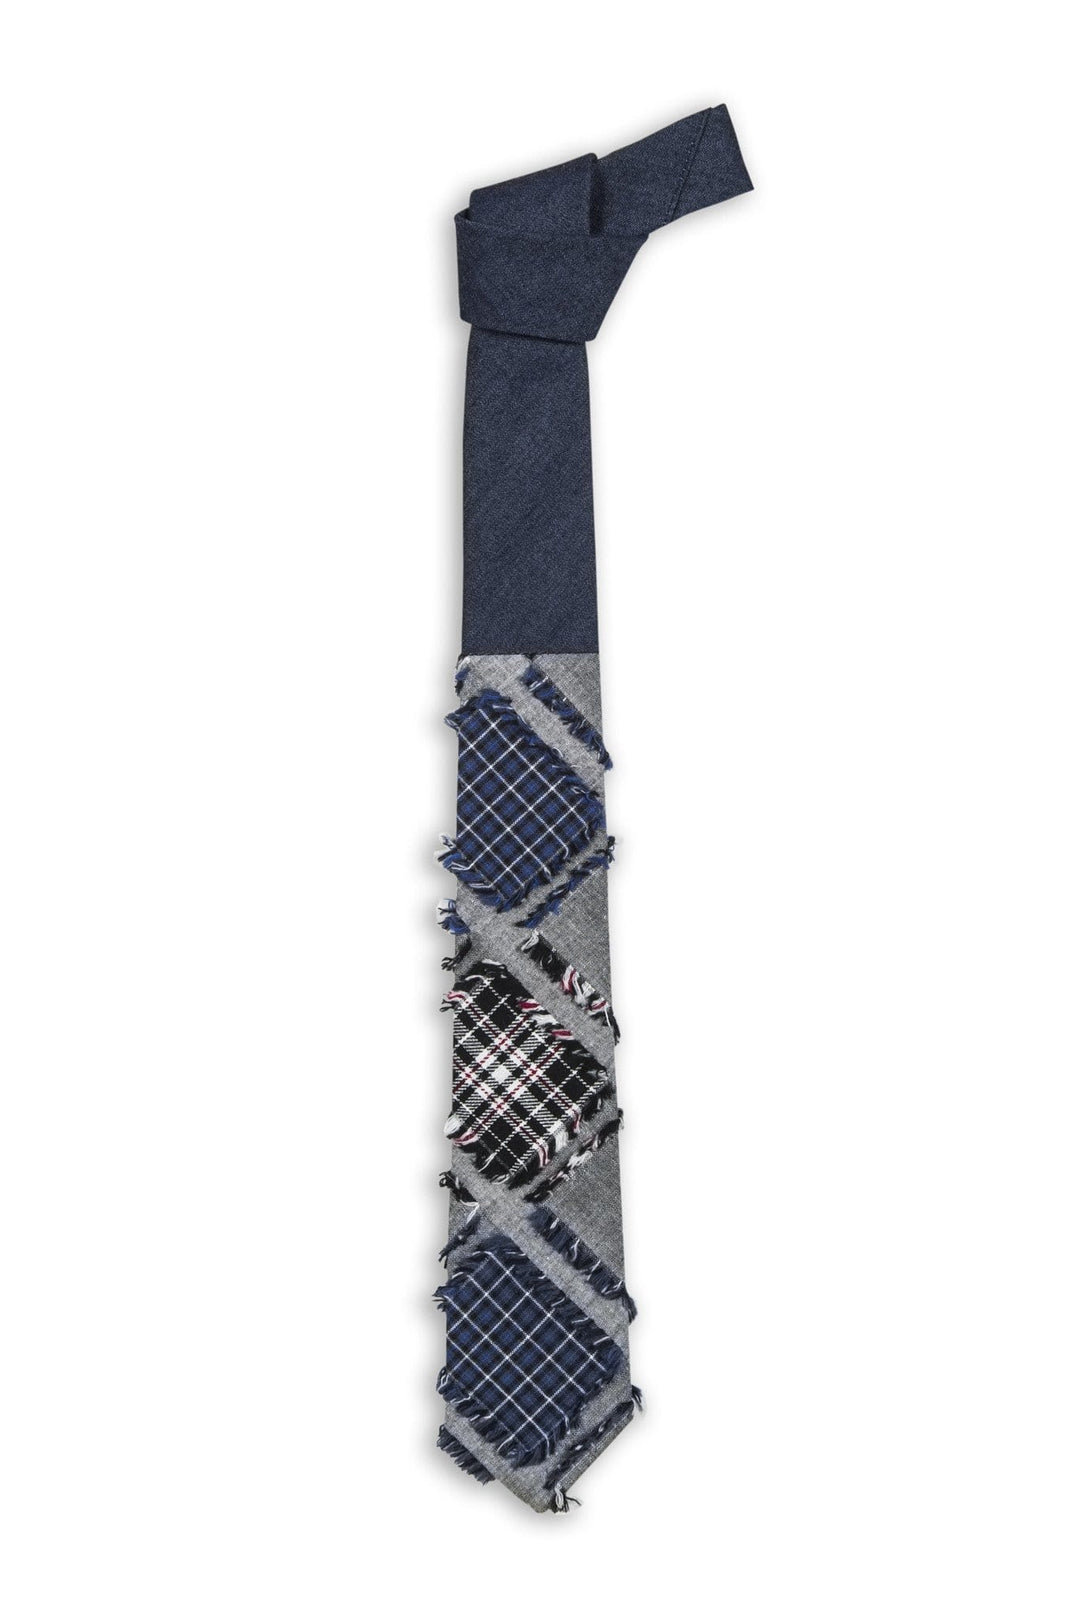 Swell Fellow Cravate 2.5'' x 58'' - Sans le mouchoir assorti / Bleu / 50% Laine 50% Coton Cravate Adamo